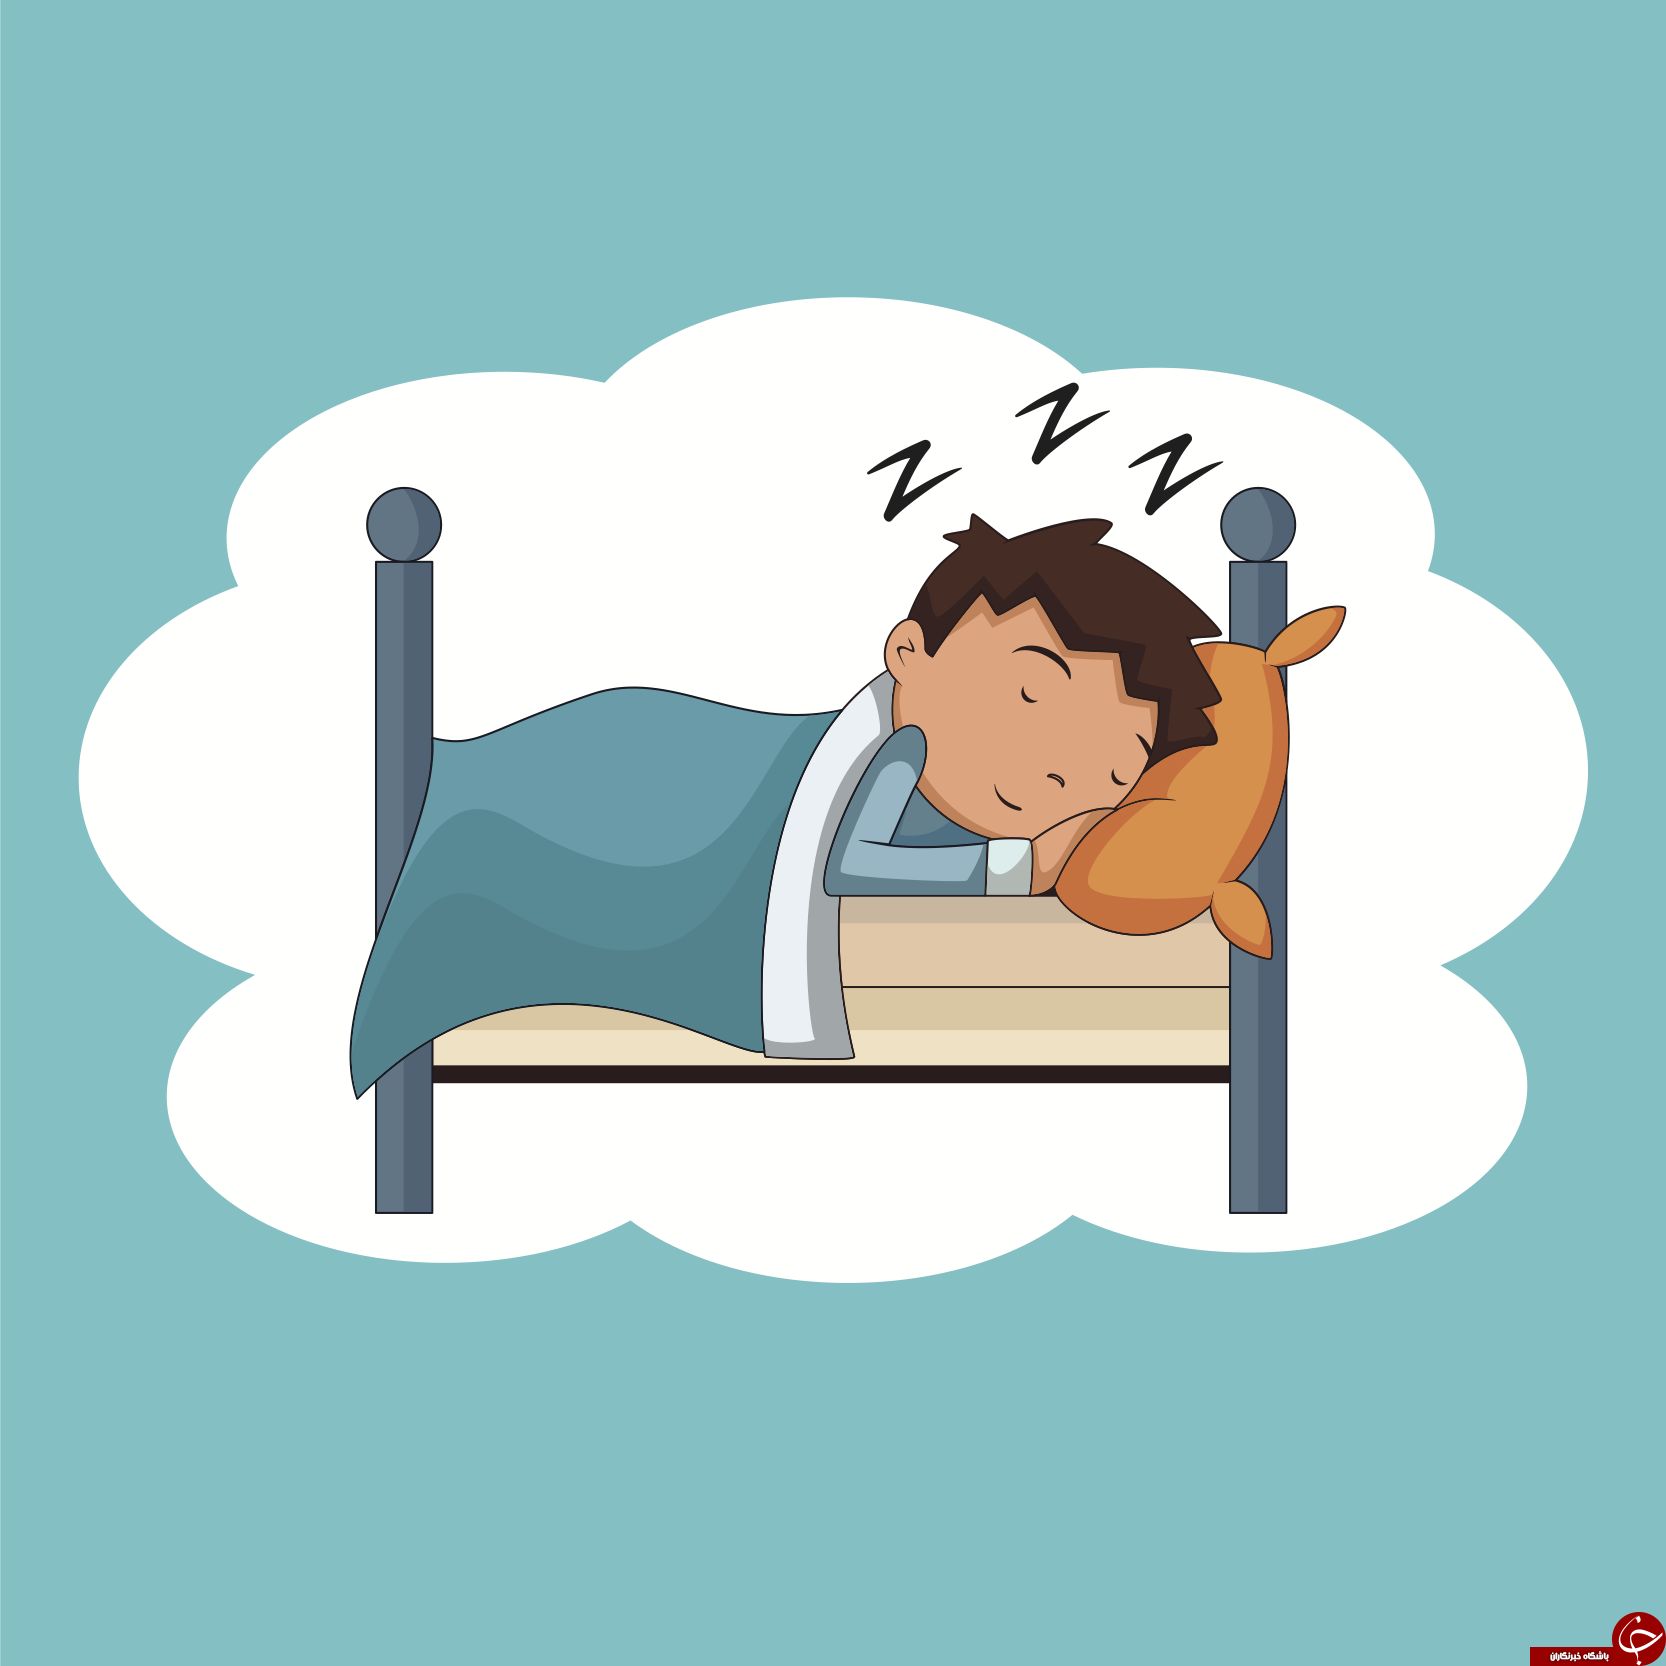 چرا باید بخوابیم؟ + کار‌هایی که نباید بعد از بیدارشدن انجام دهید